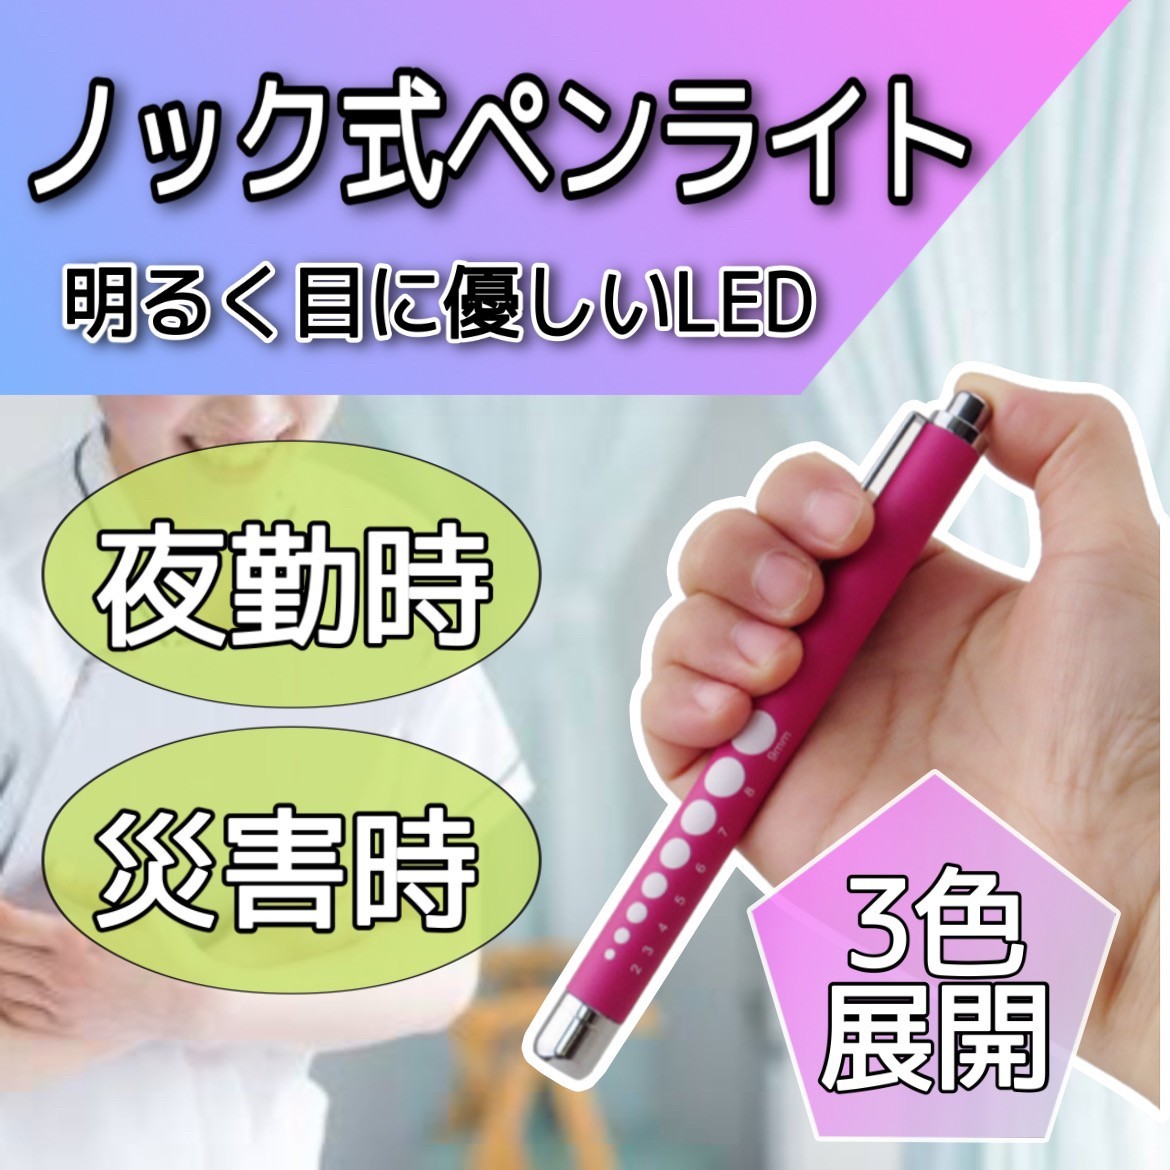 ペンライト 【ピンク】 医療用ペンライト LED パープル ラバー調 看護